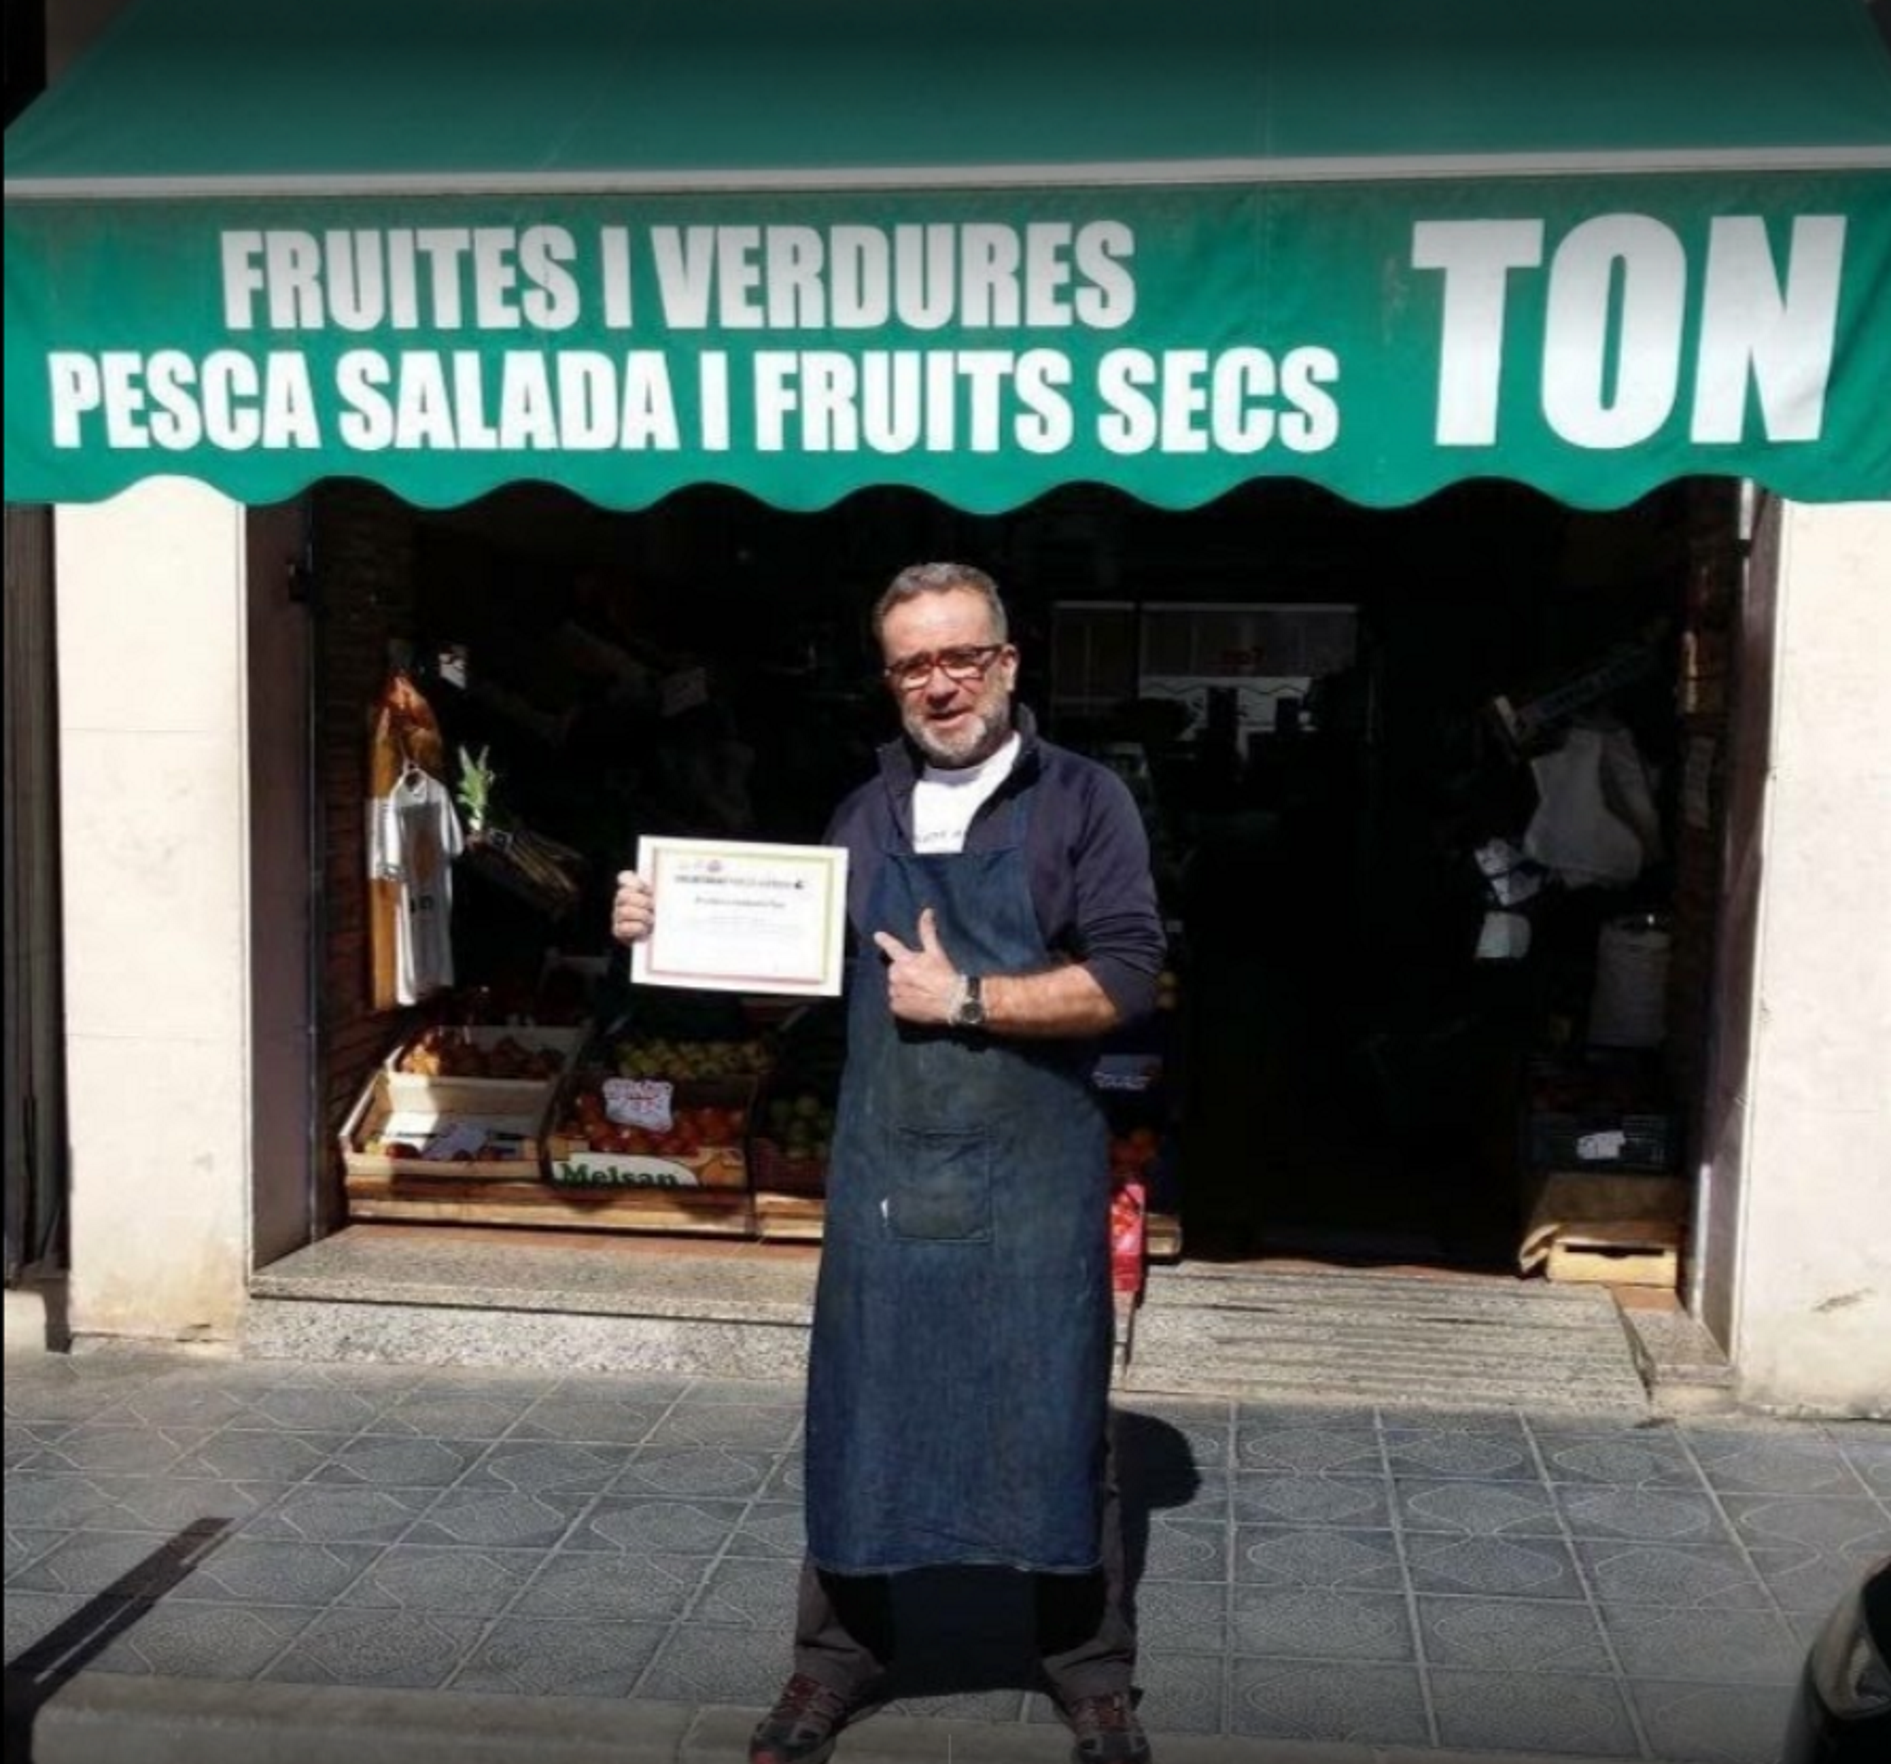 Boicotegen un fruiter de Tarragona per dur el llaç groc, i triplica vendes